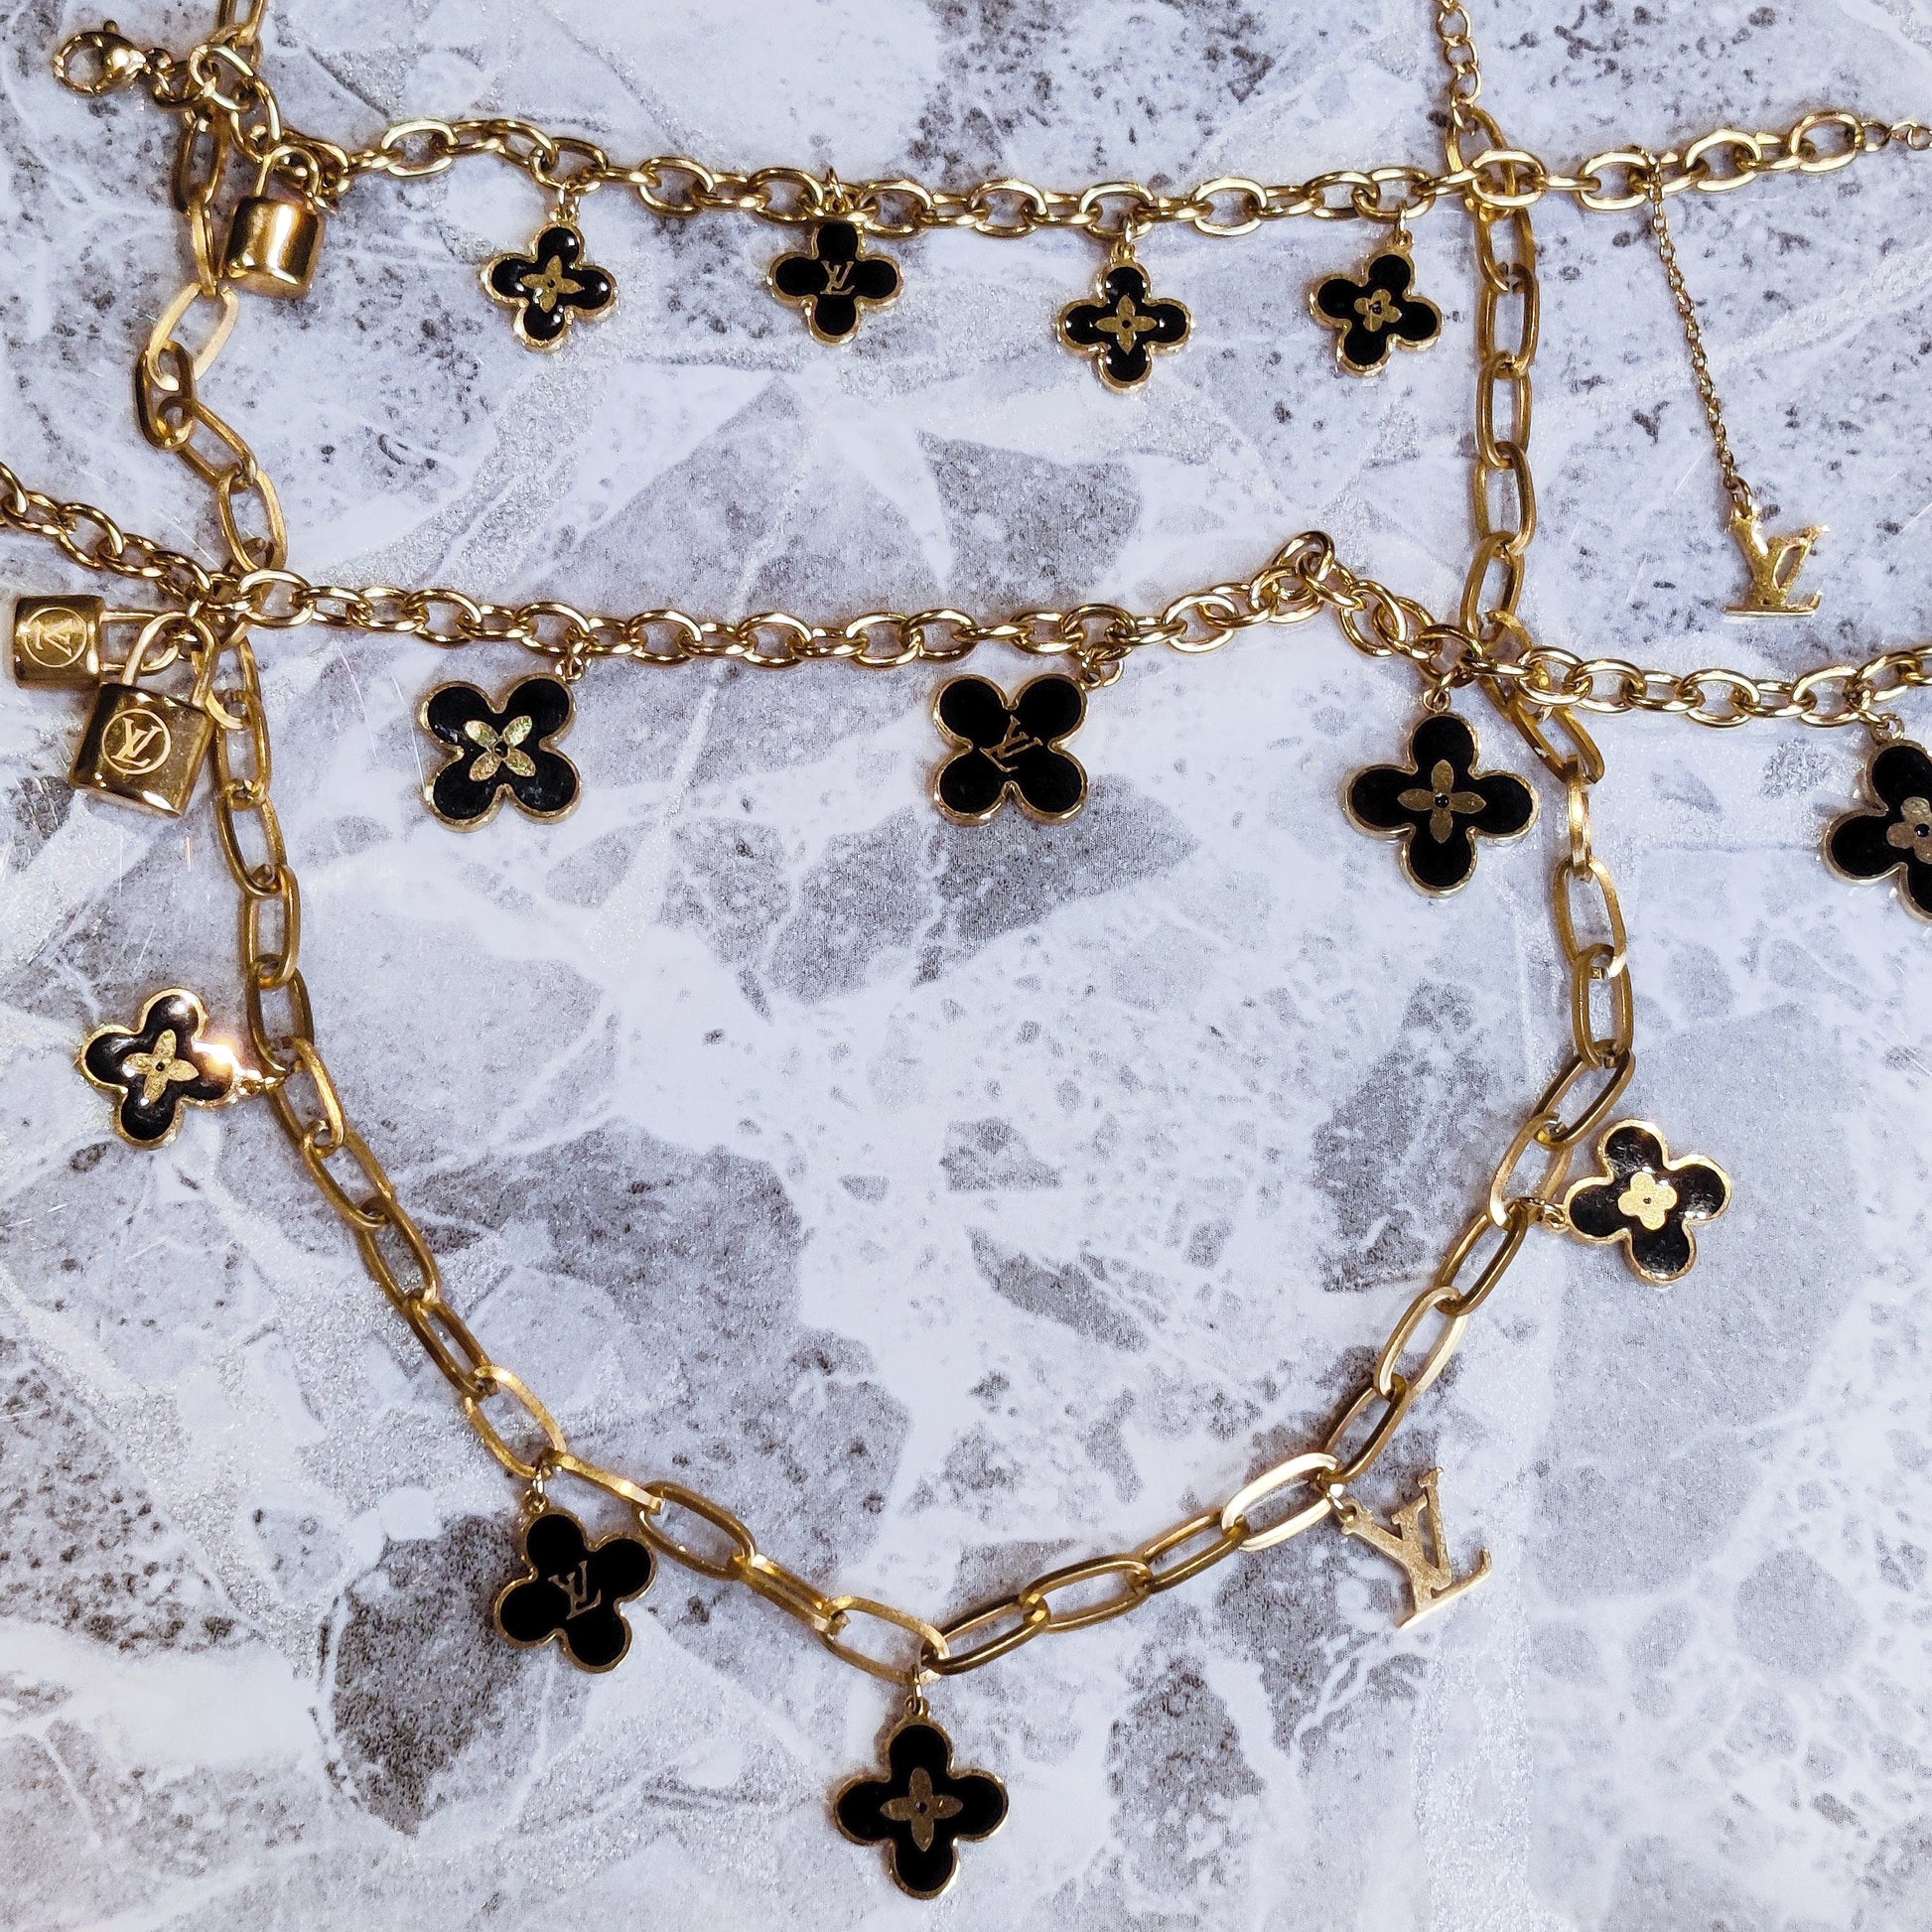 LV Clover Necklace, Bracelet and Anklet